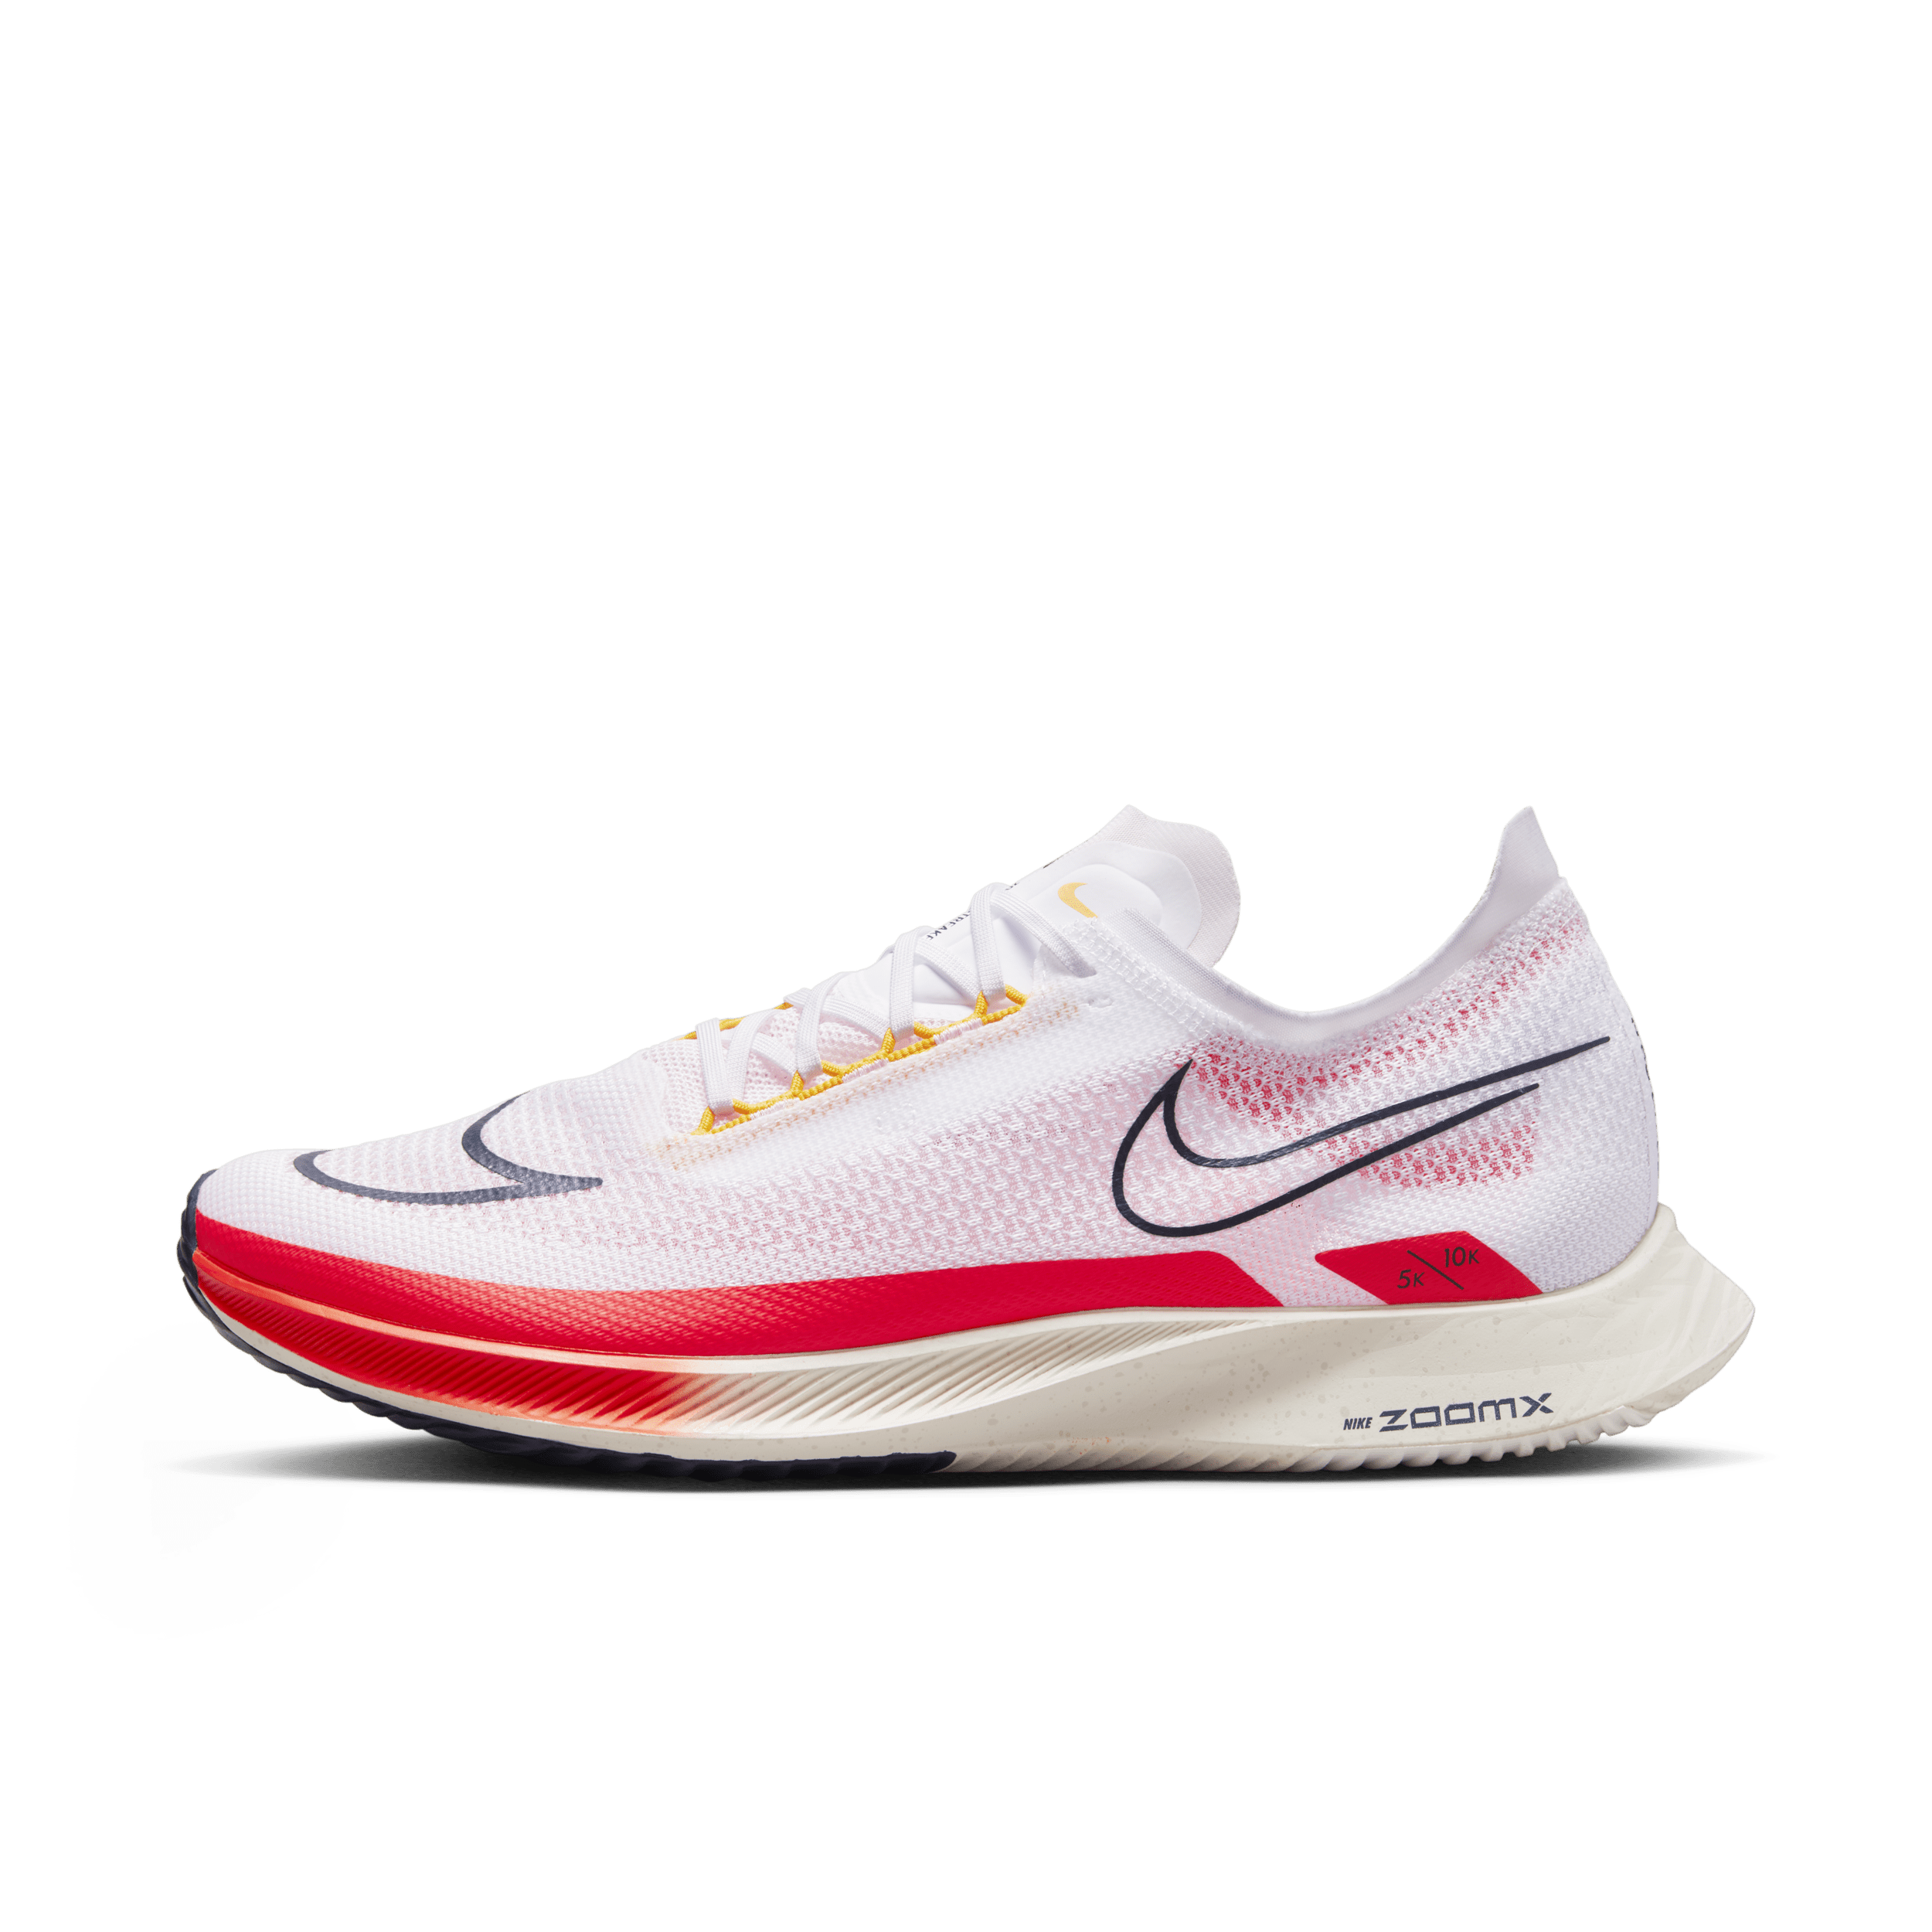 Nike Streakfly Wedstrijdschoenen (straat) – Wit